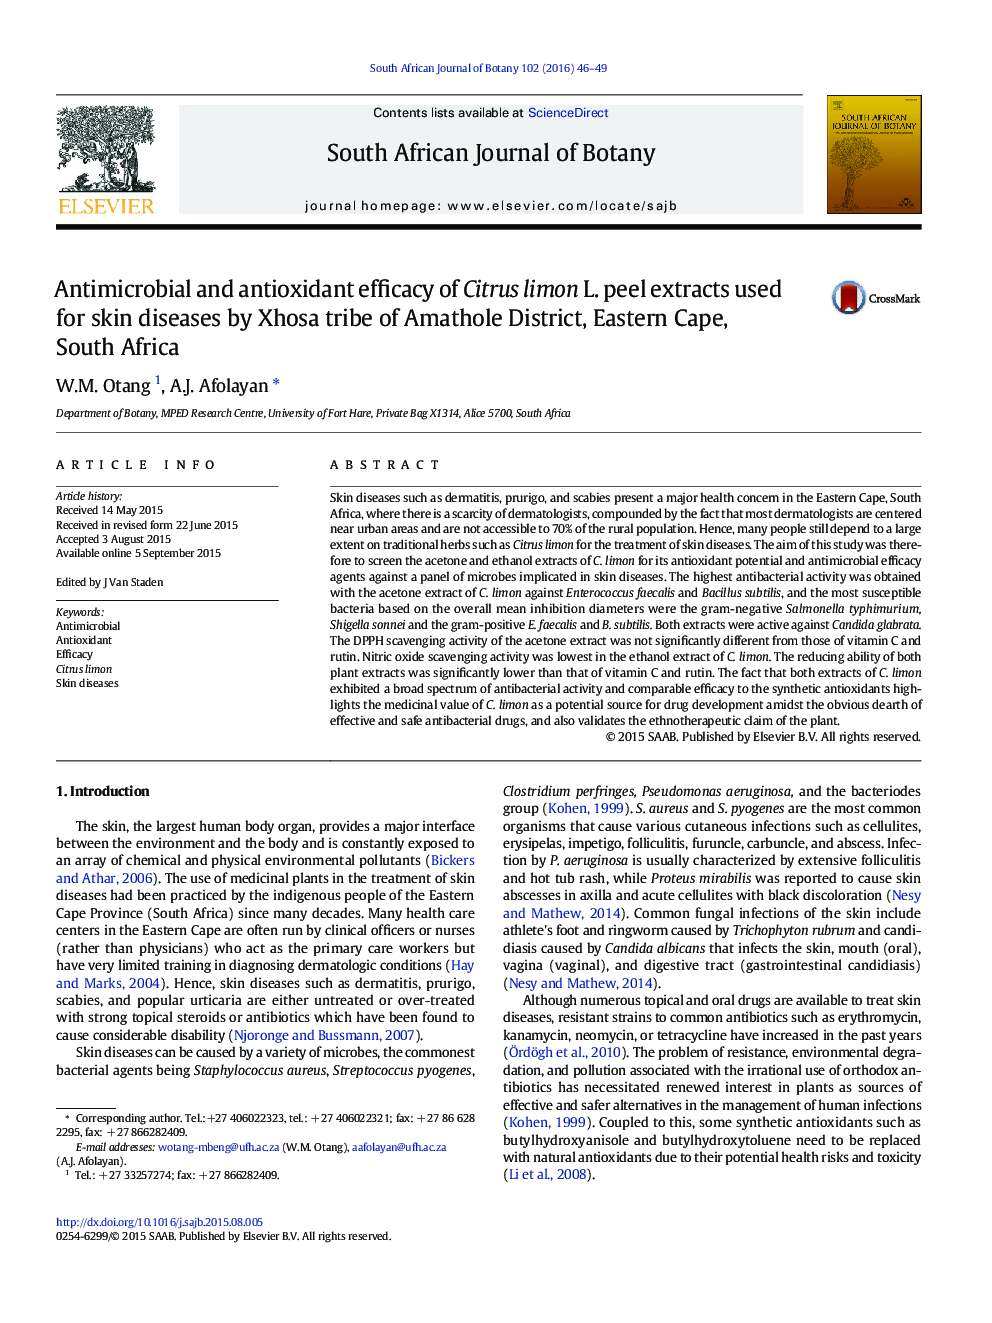 اثرات ضد میکروبی و آنتی اکسیدانی عصاره های پوستی (Citrus limon L) برای بیماری های پوستی توسط قبیله کوشا از منطقه آماتول، کیپ شرقی، آفریقای جنوبی